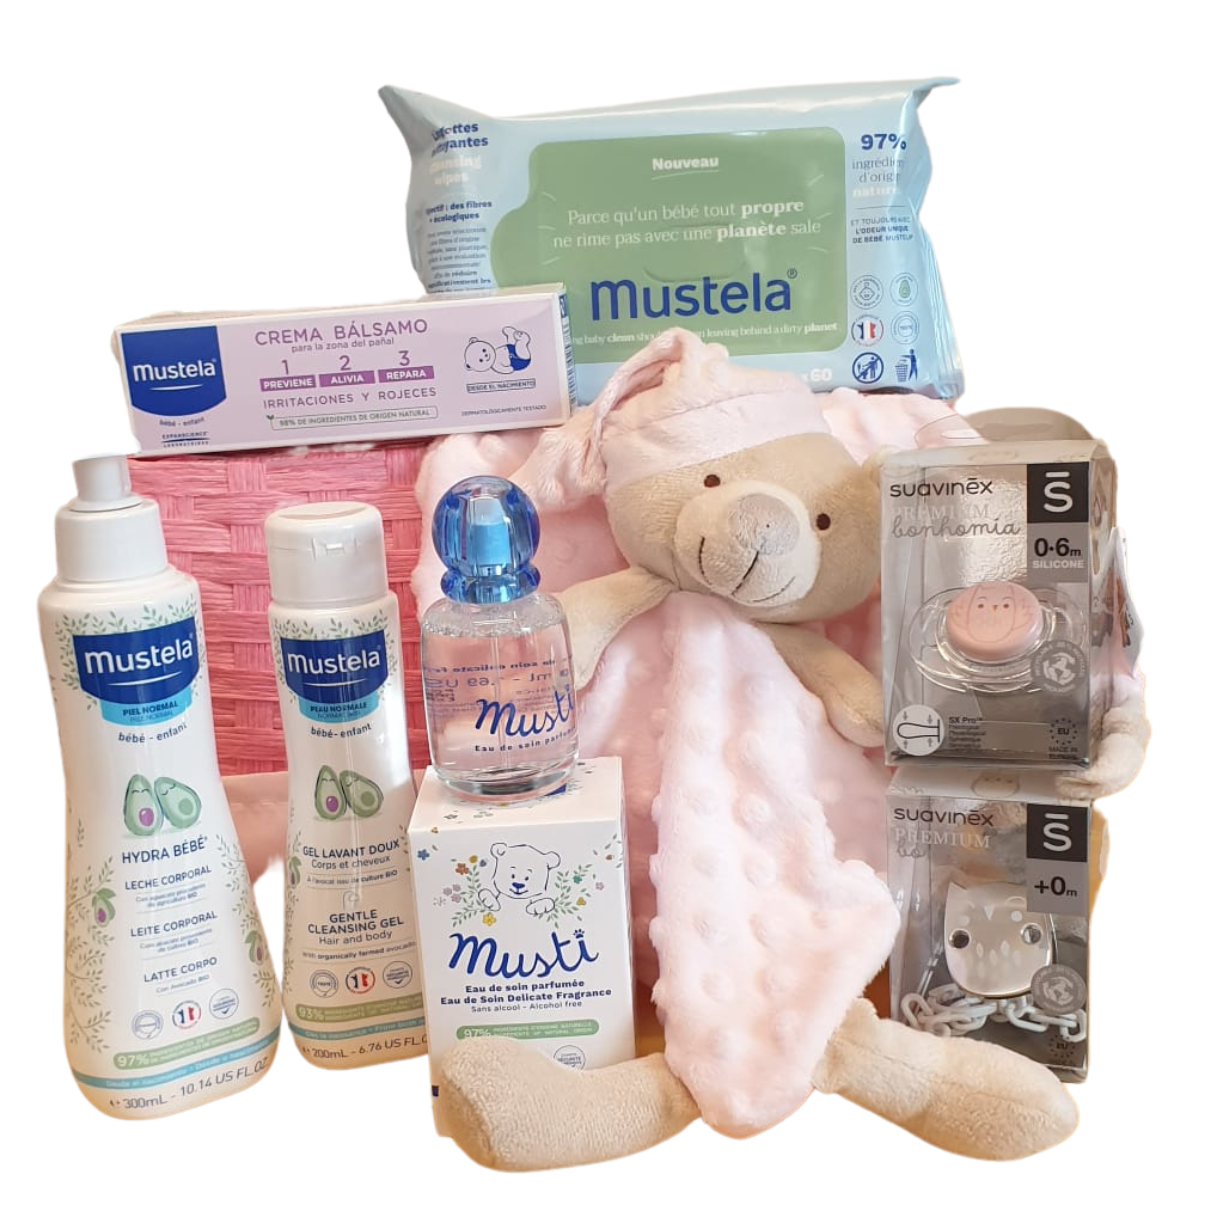 Mustela Canastilla Bebé Rosa regalo para tu bebé